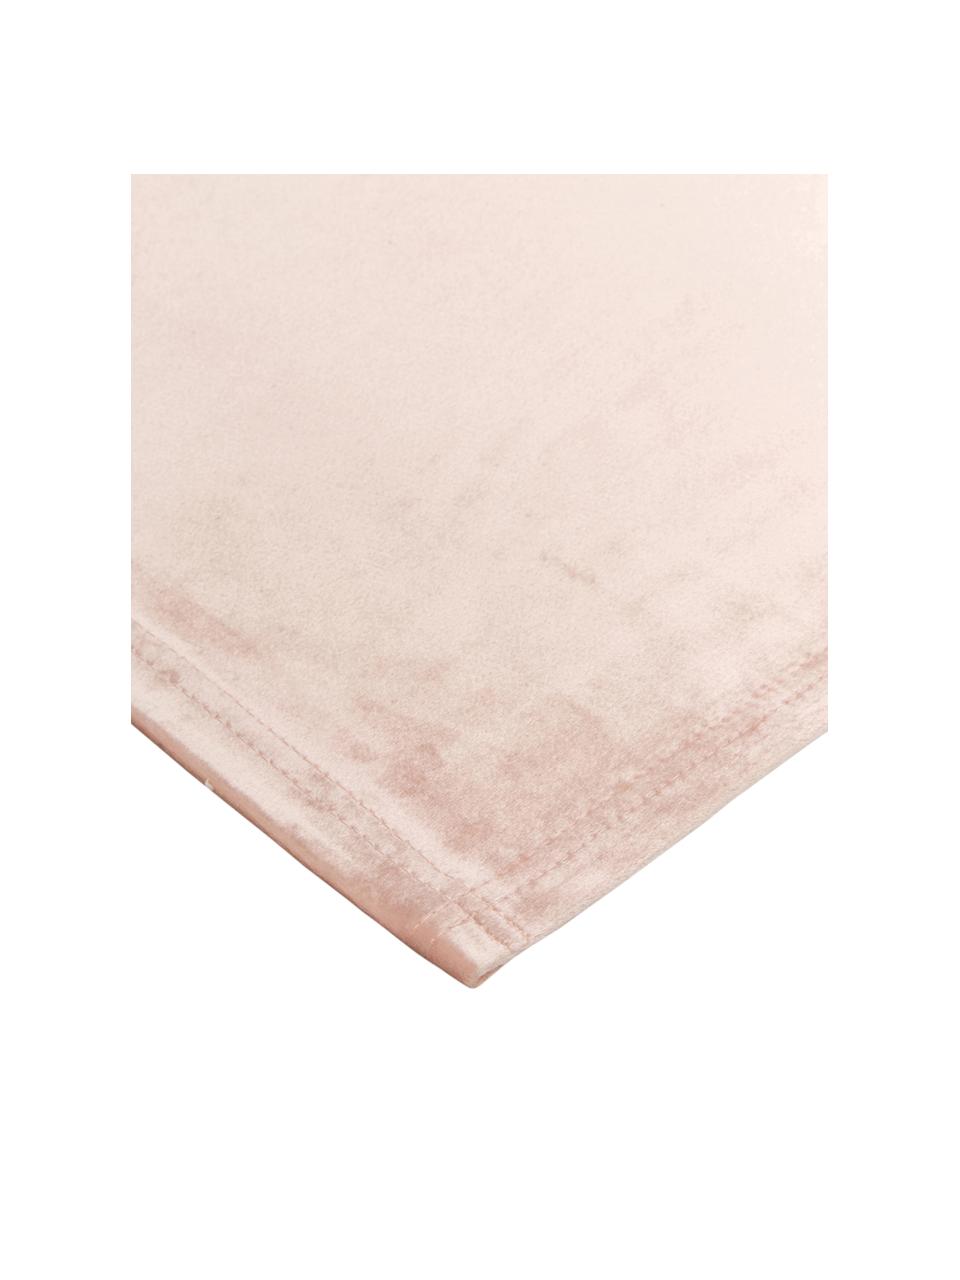 Samt-Tischsets Simone, 2 Stück, 100% Polyestersamt, Rosa, 35 x 45 cm